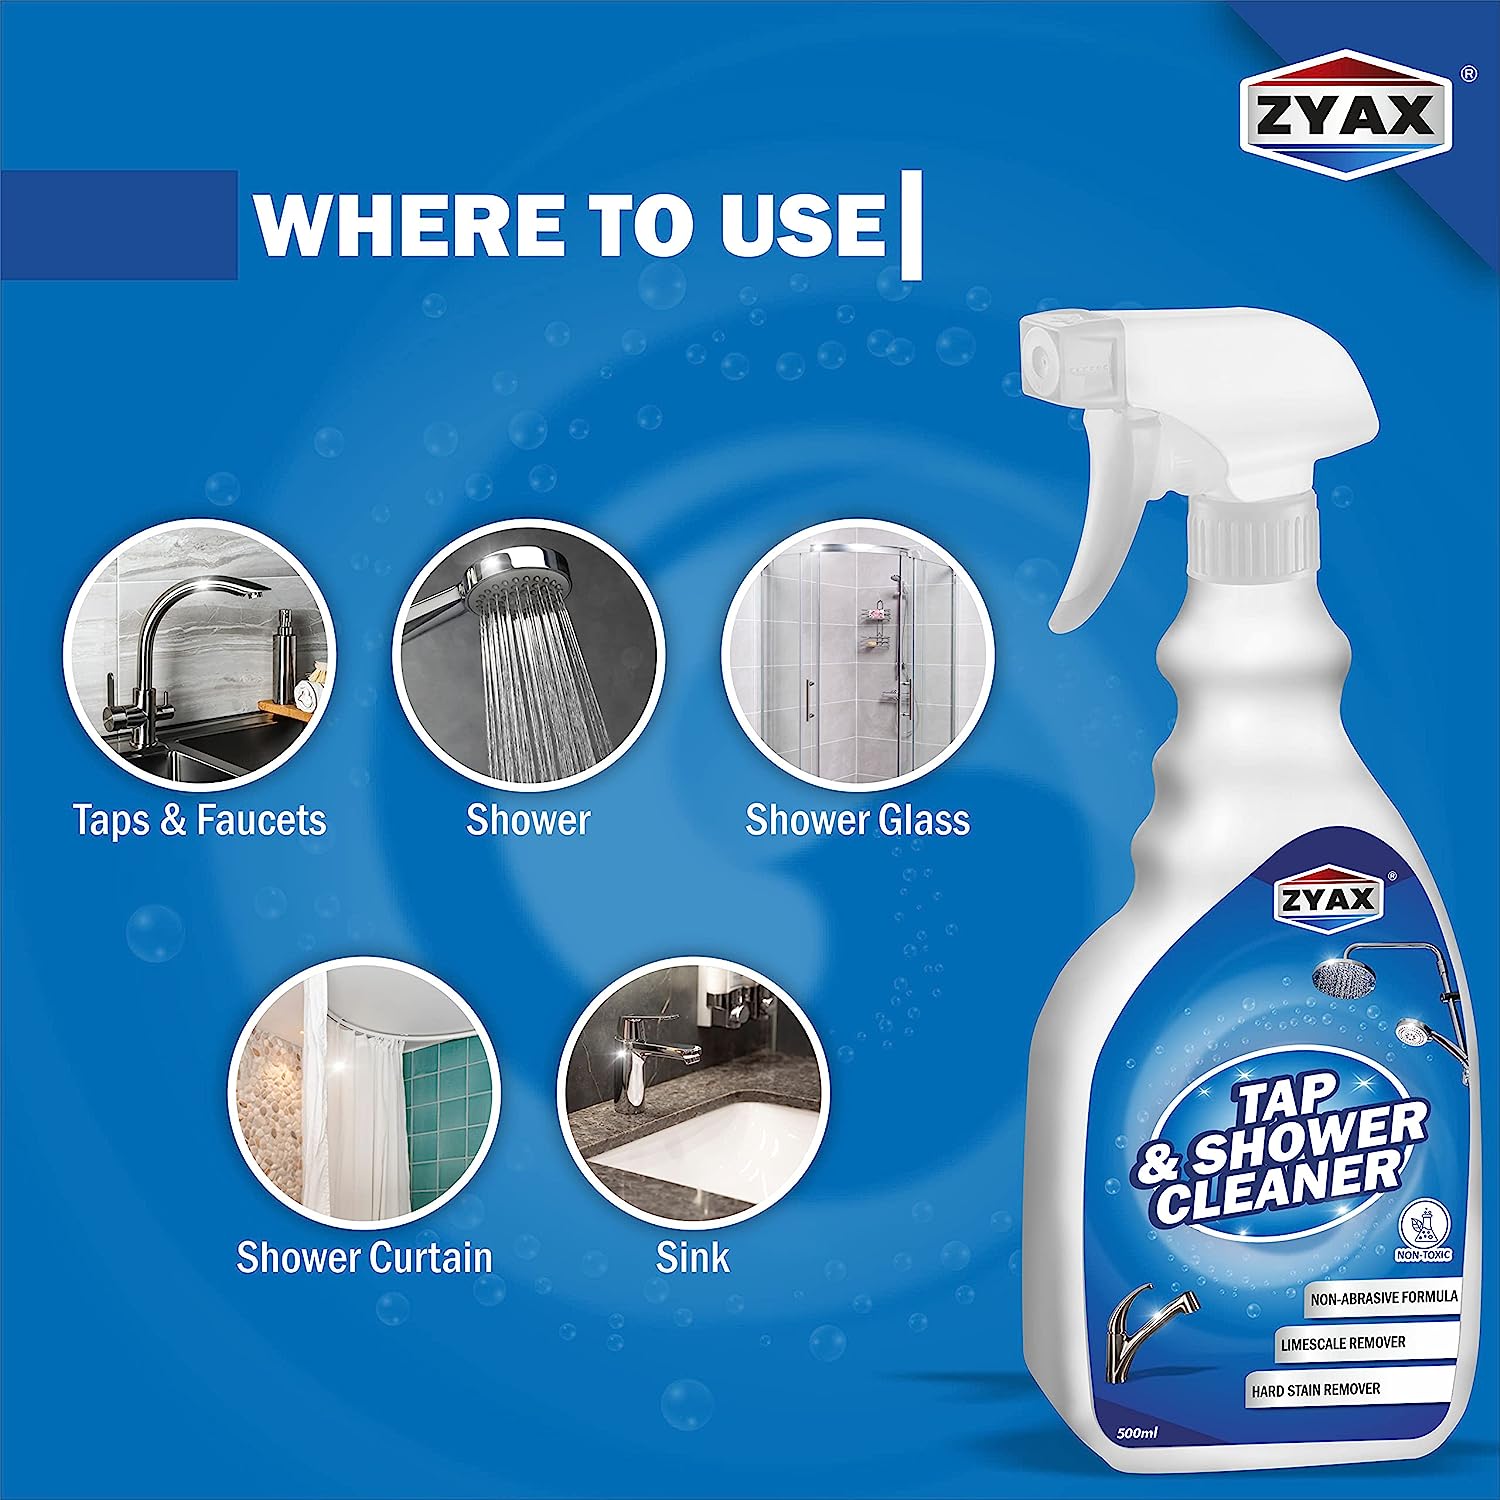 Zyax Tap & Shower Cleaner - Zyax.in